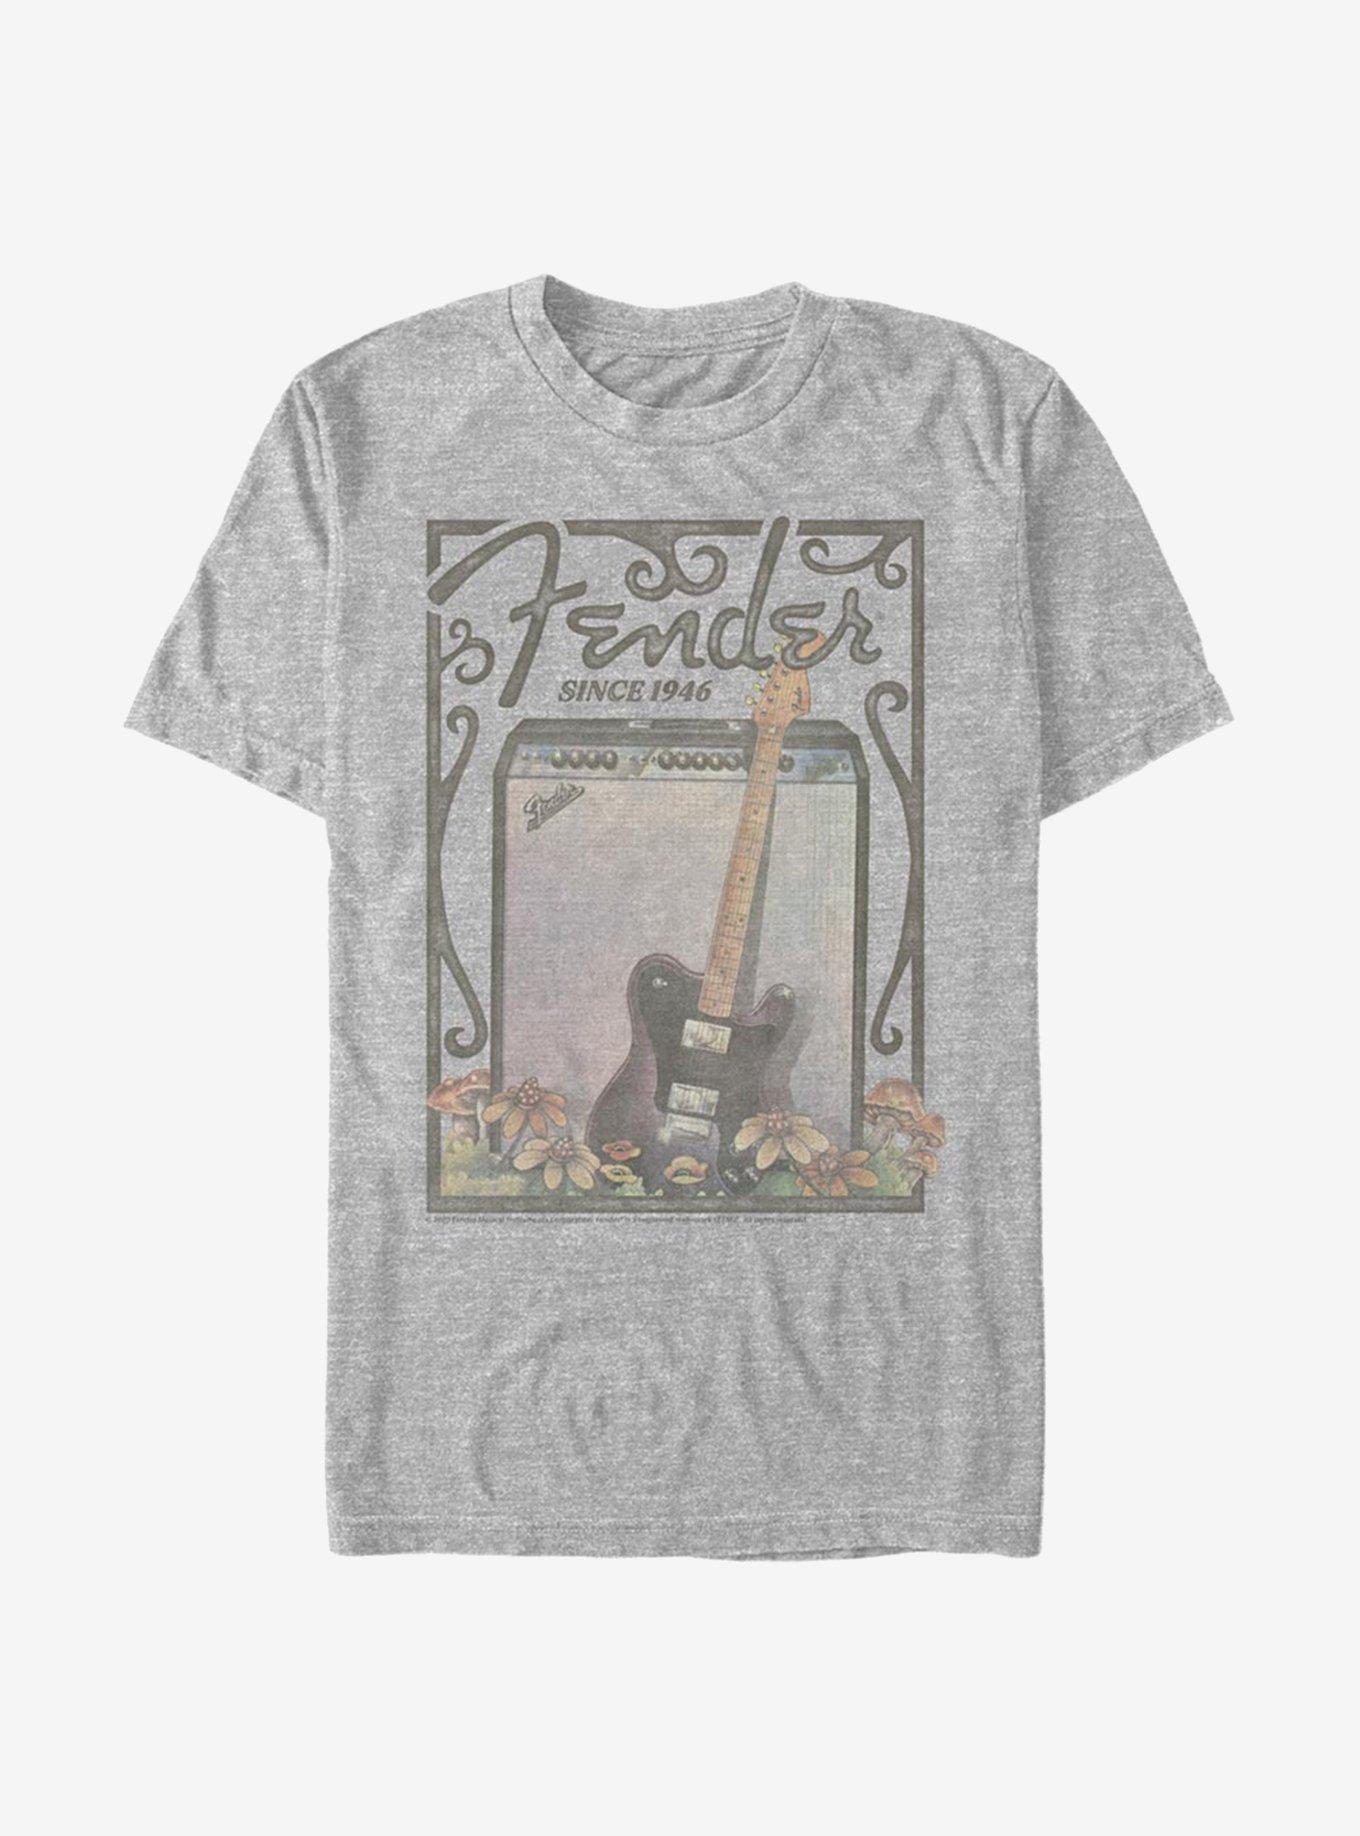 Fender Retro Poster T-Shirt, , hi-res